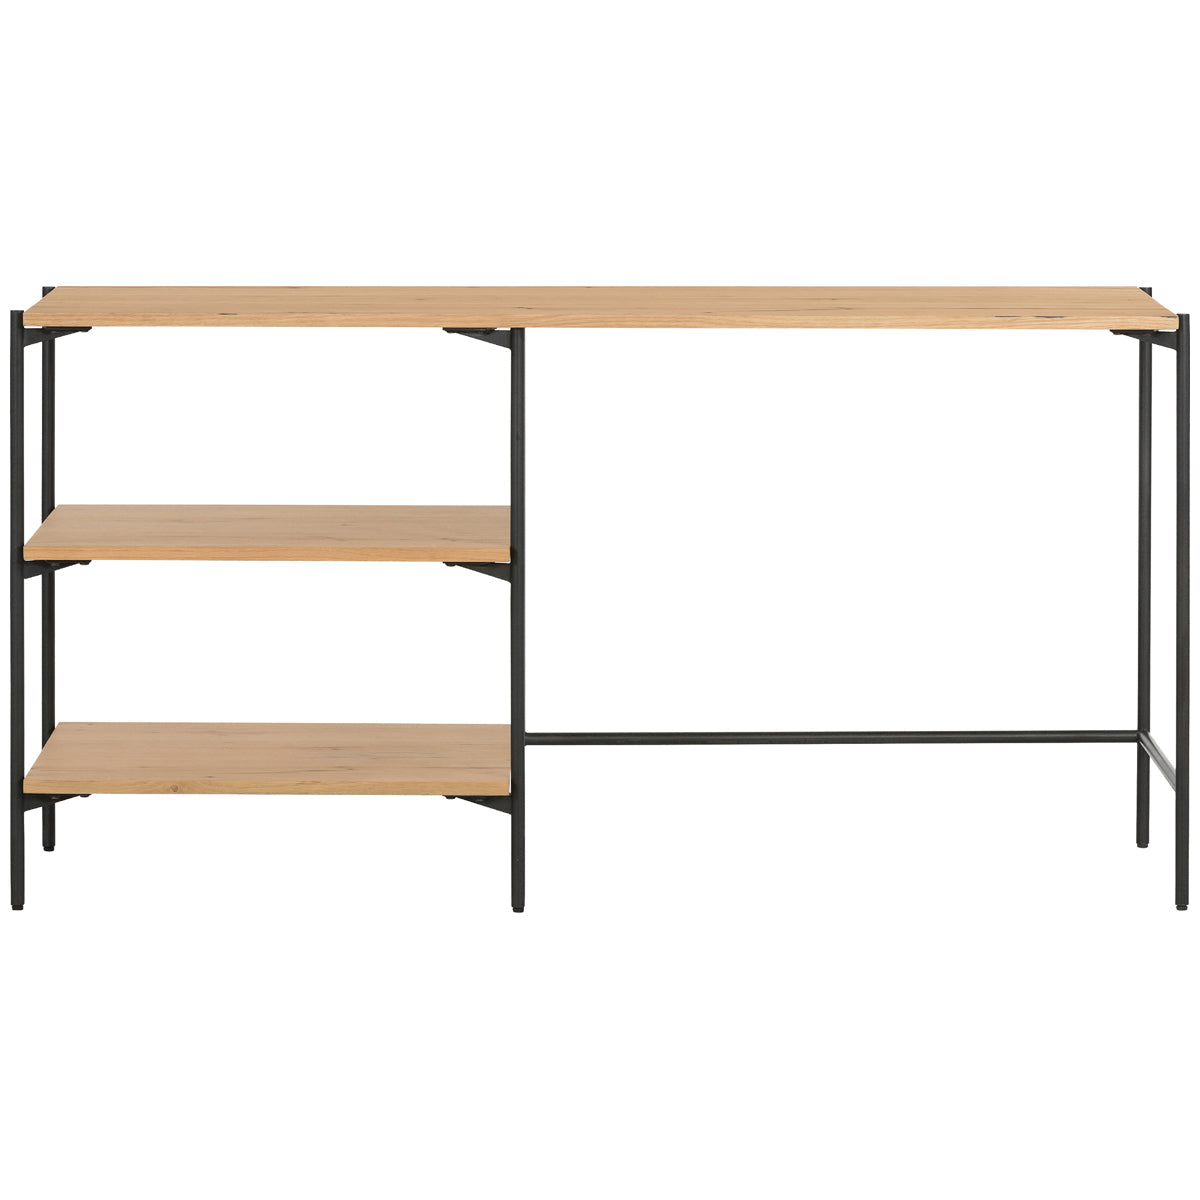 Four Hands Haiden Eaton Modular Desk with Shelves - Light Oak Resin